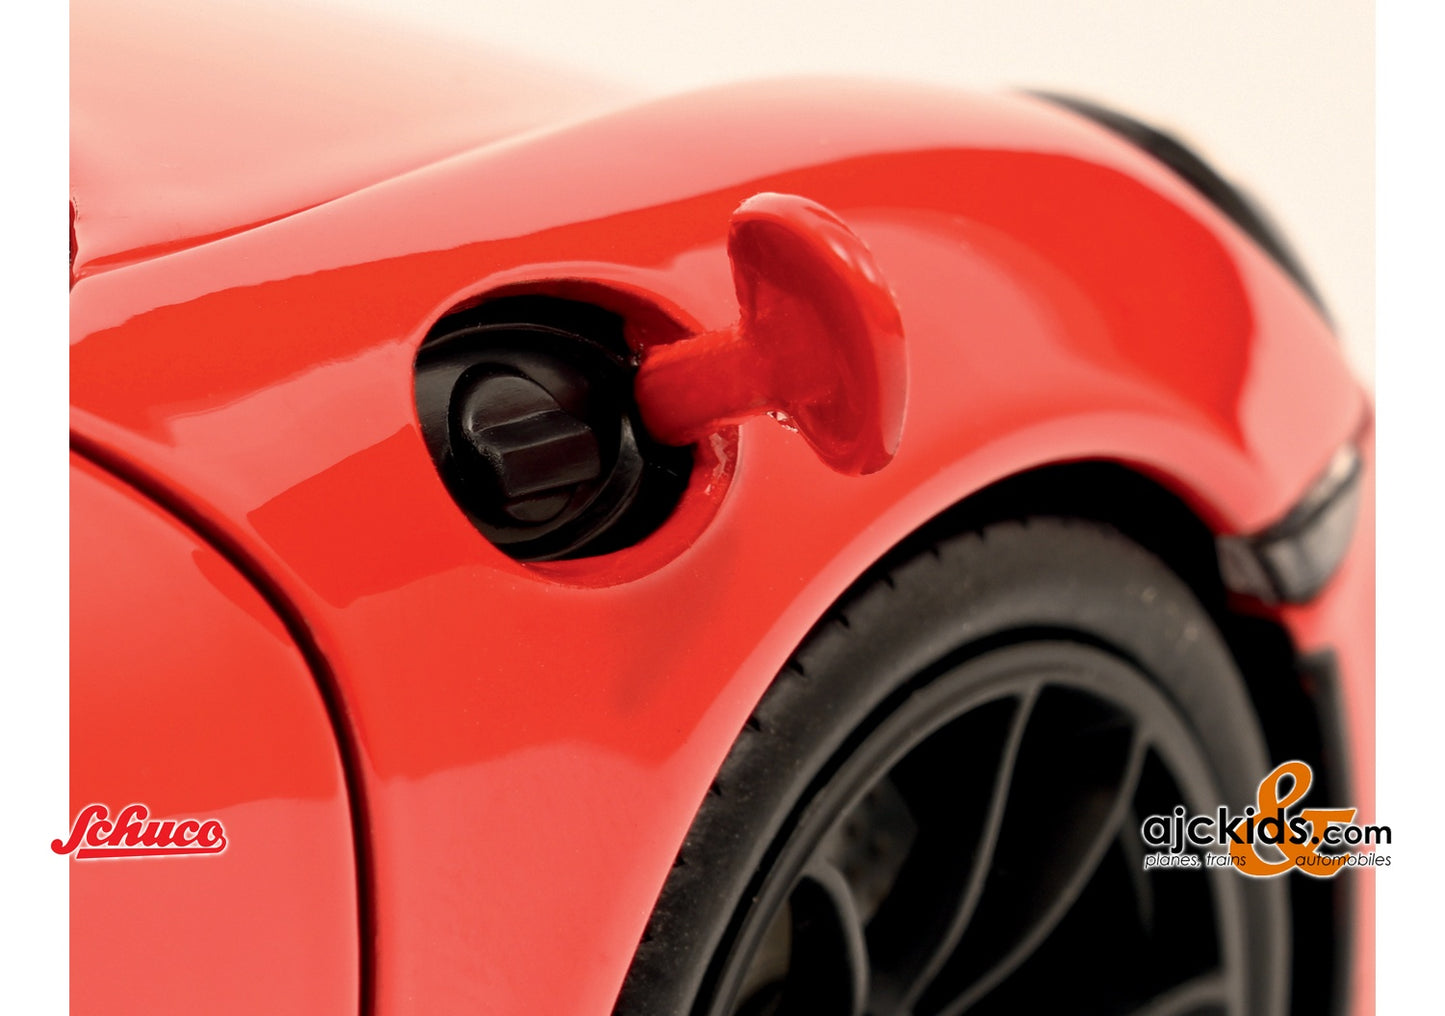 Schuco 450040300 - Porsche Cayman GT4 red 1:18